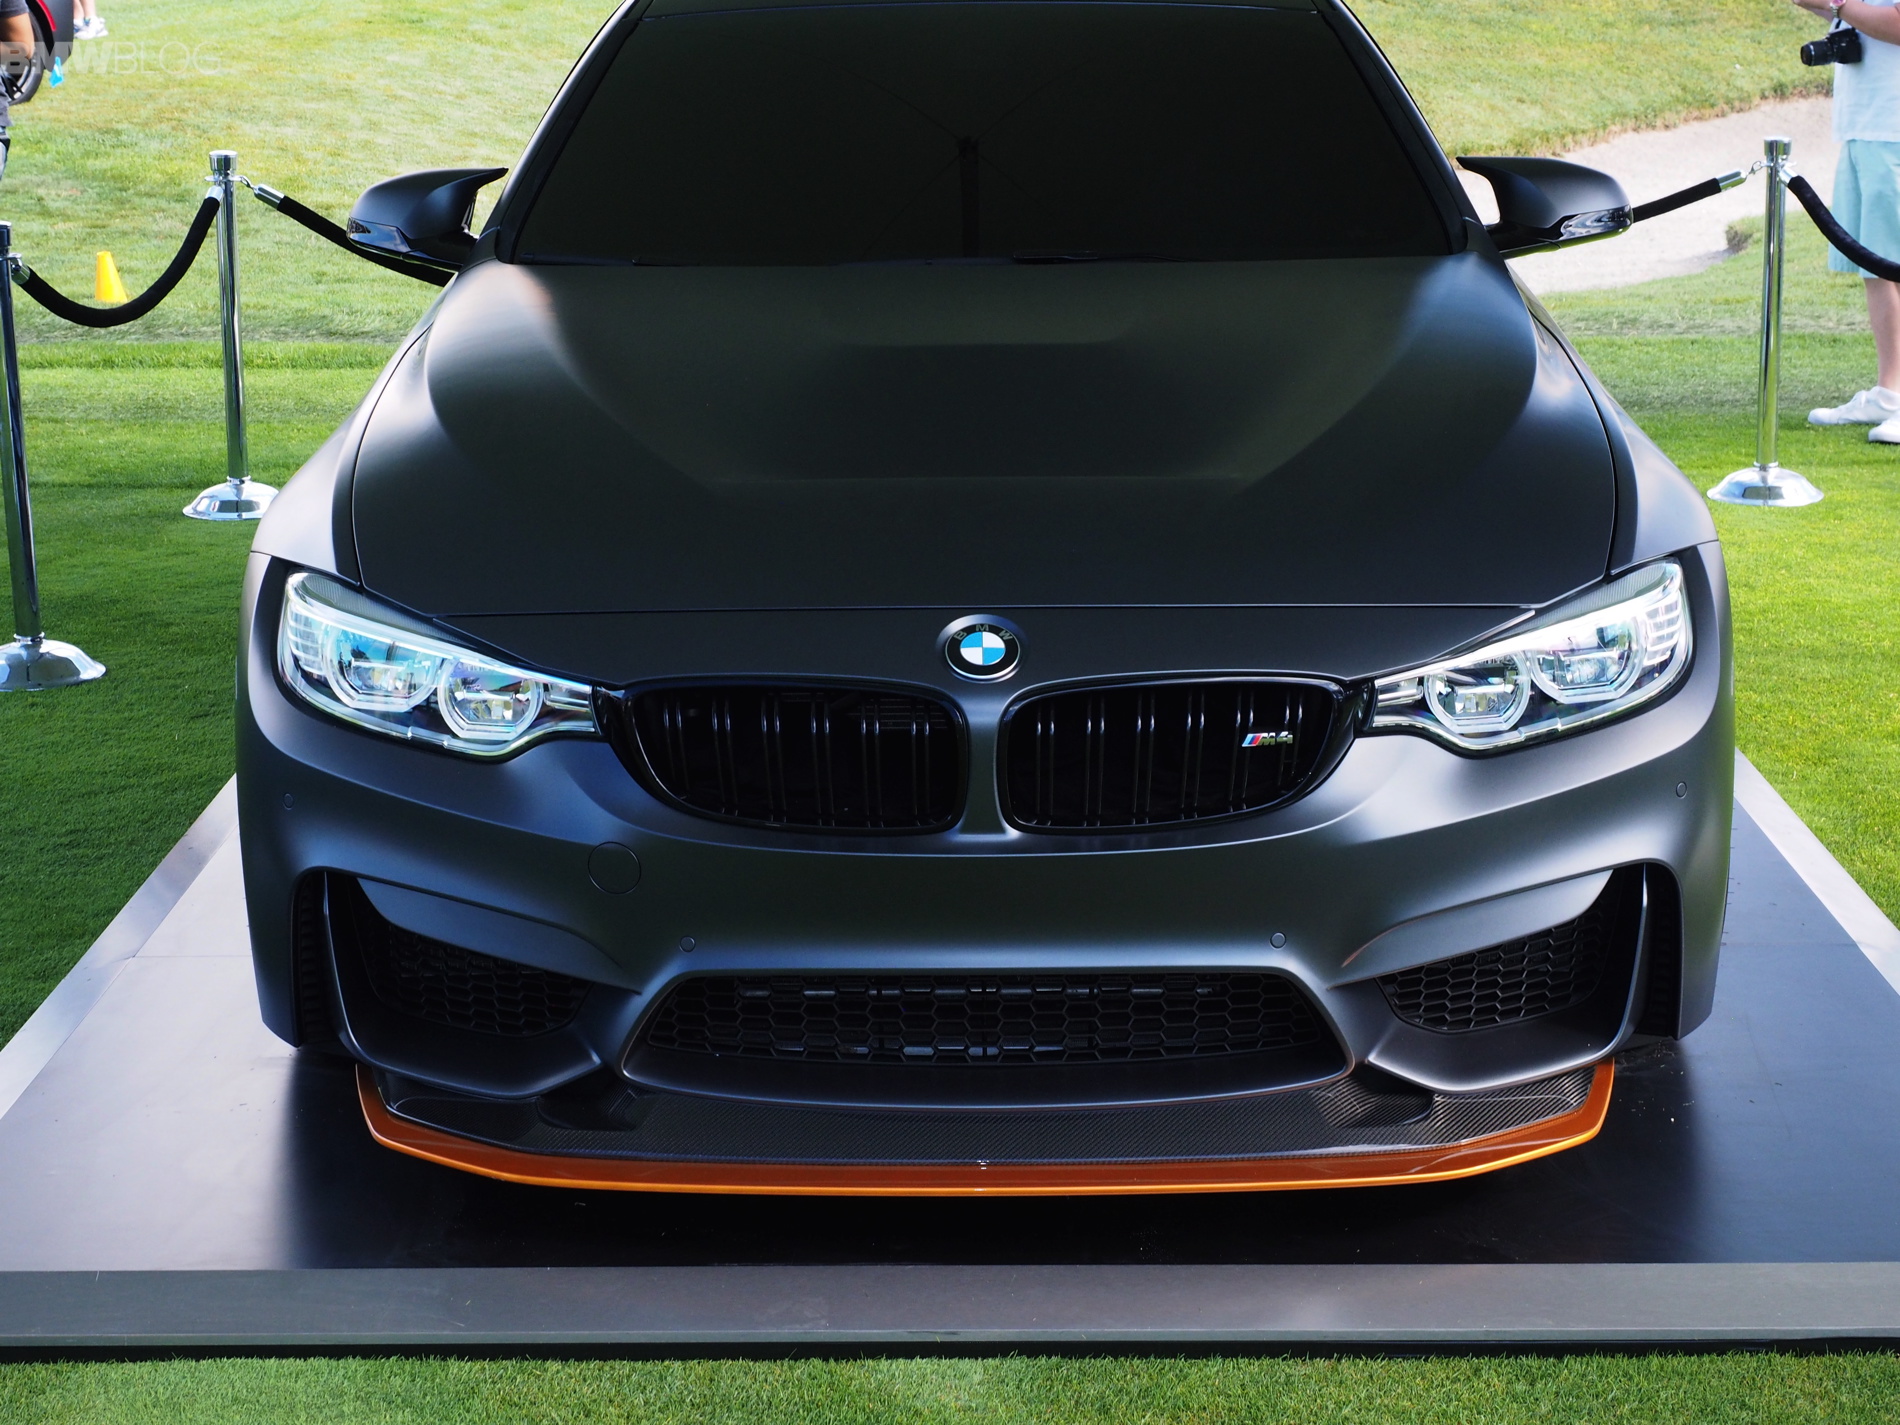 BMW M4 GTS Concept images 1900x1200 57